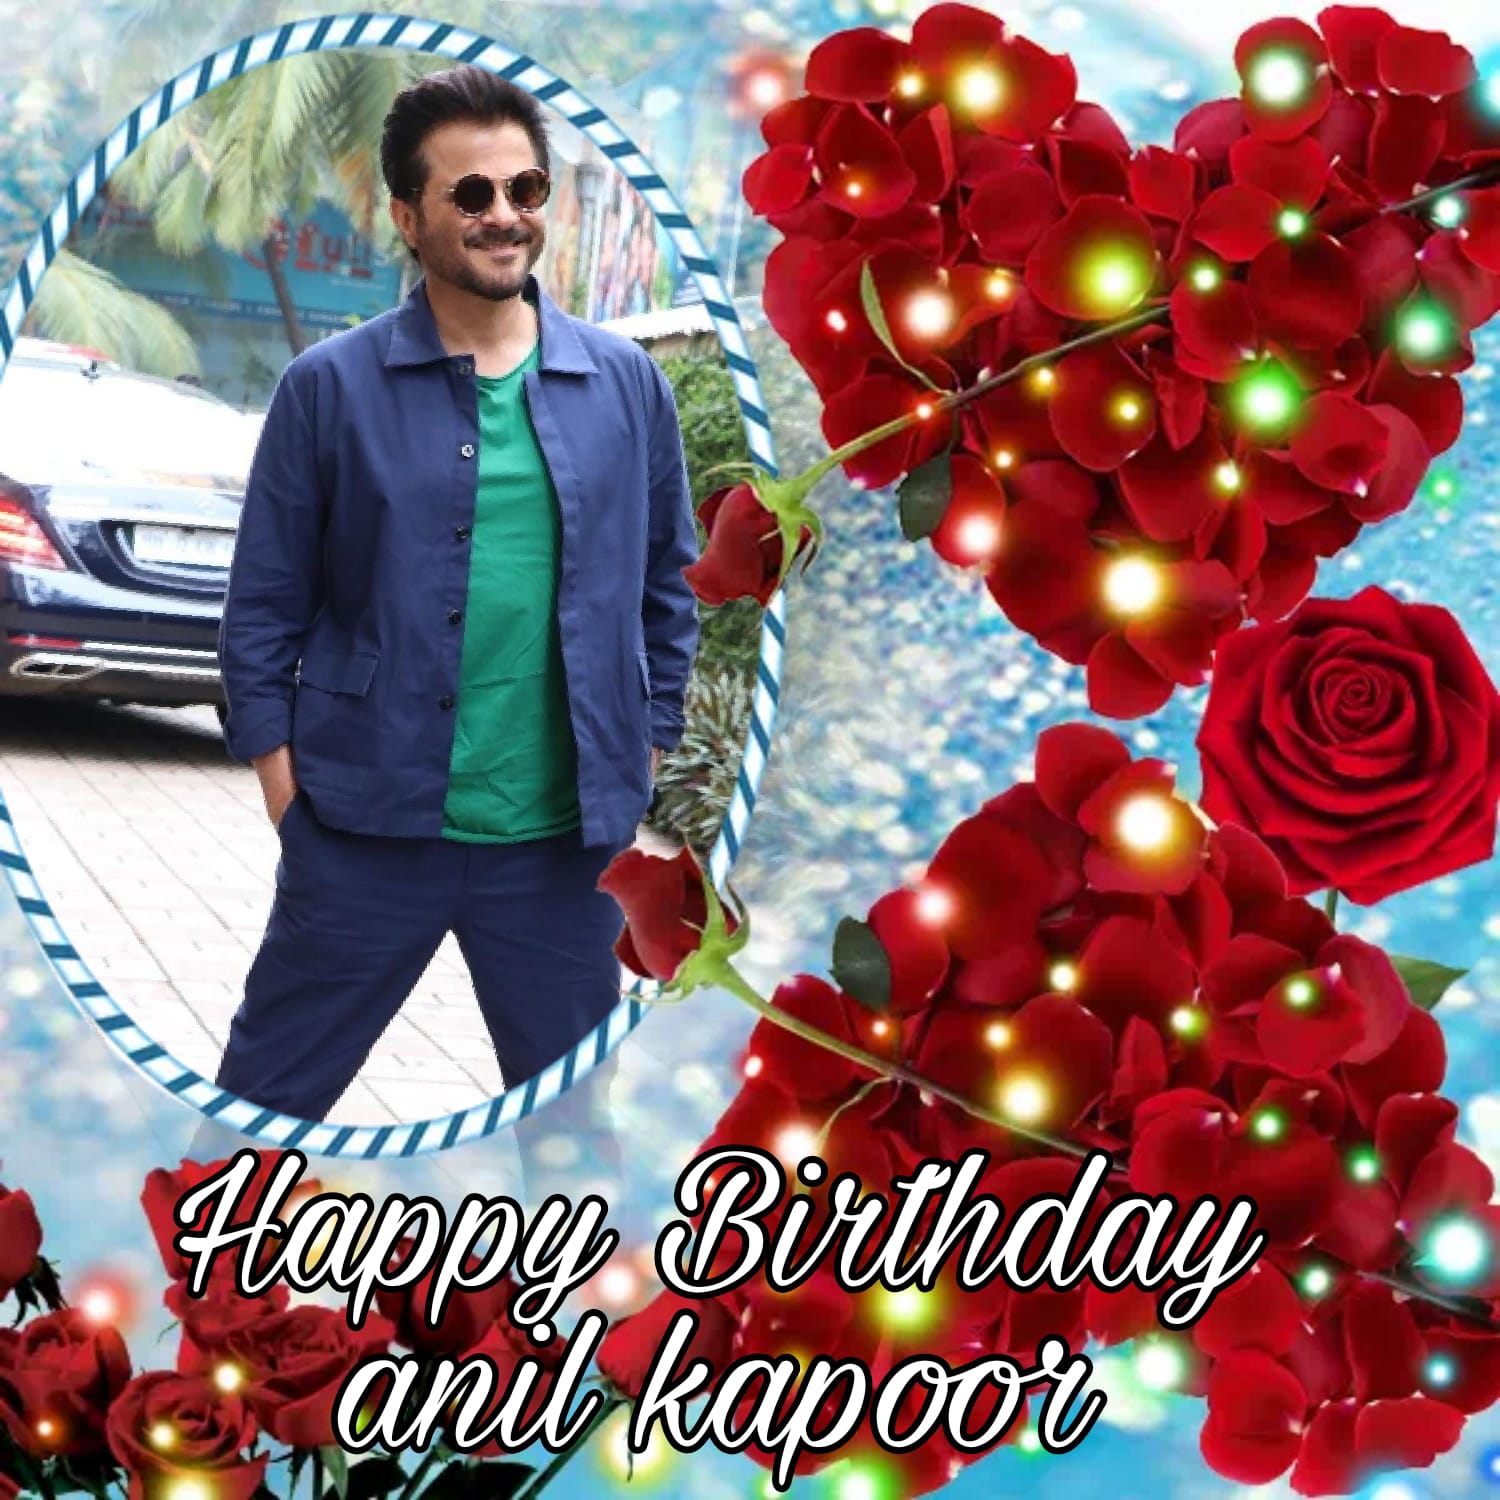 Happy birthday
Anil kapoor   